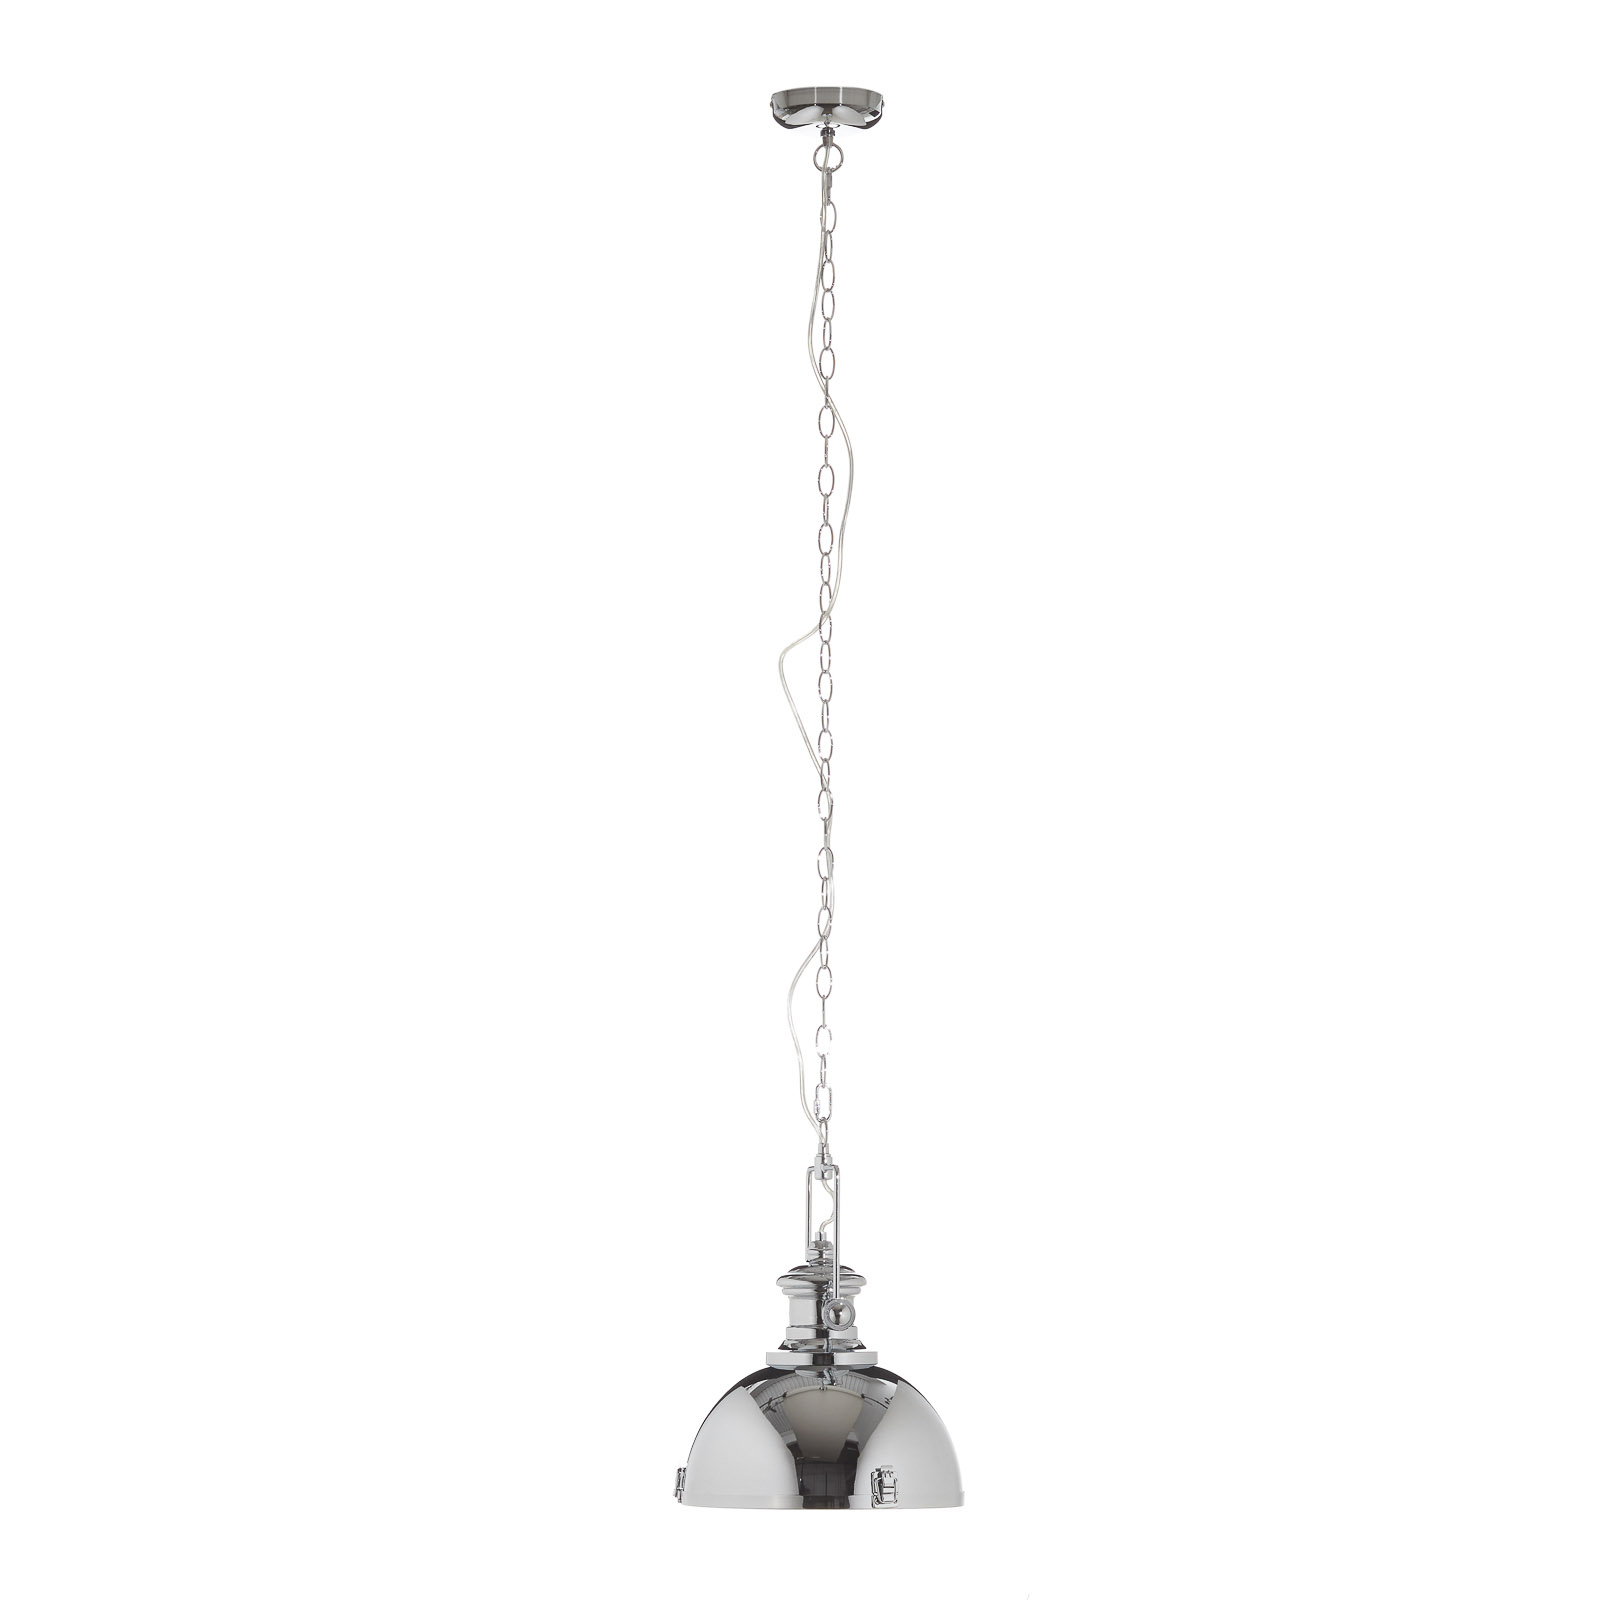 Hanglamp metaal, industrieel ontwerp, chroomkleurig